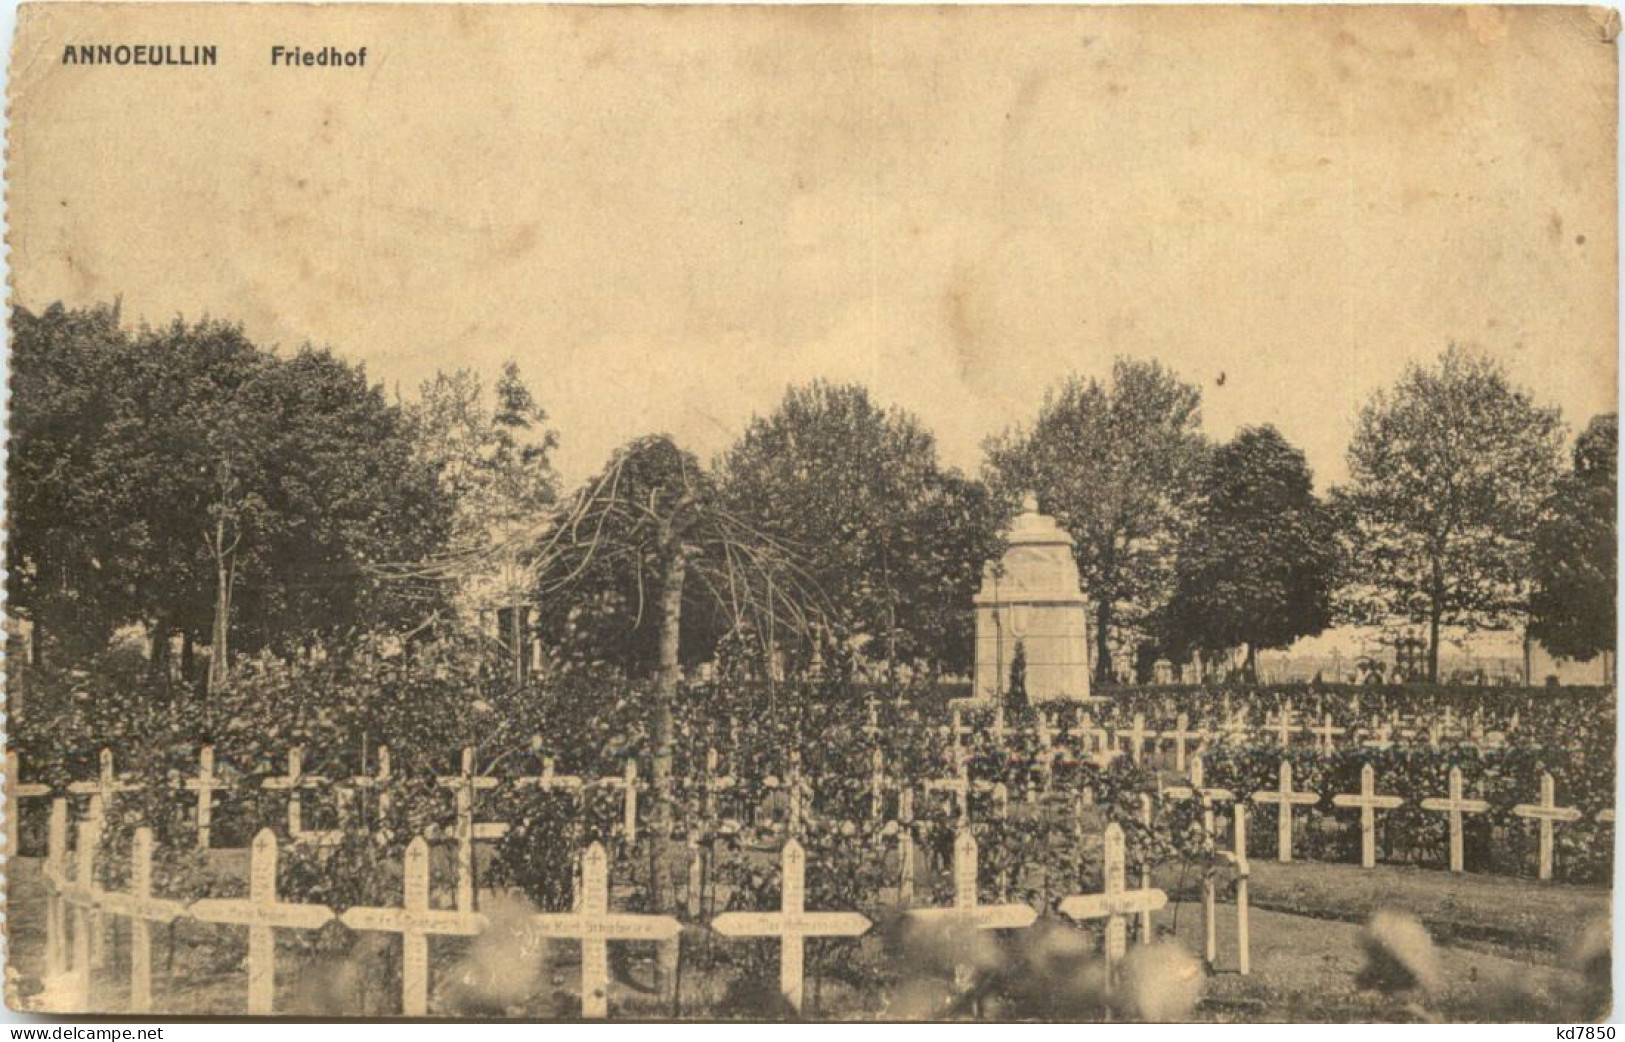 Annoeullin - Friedhof - Feldpost 30. Inf Division - Cimetières Militaires